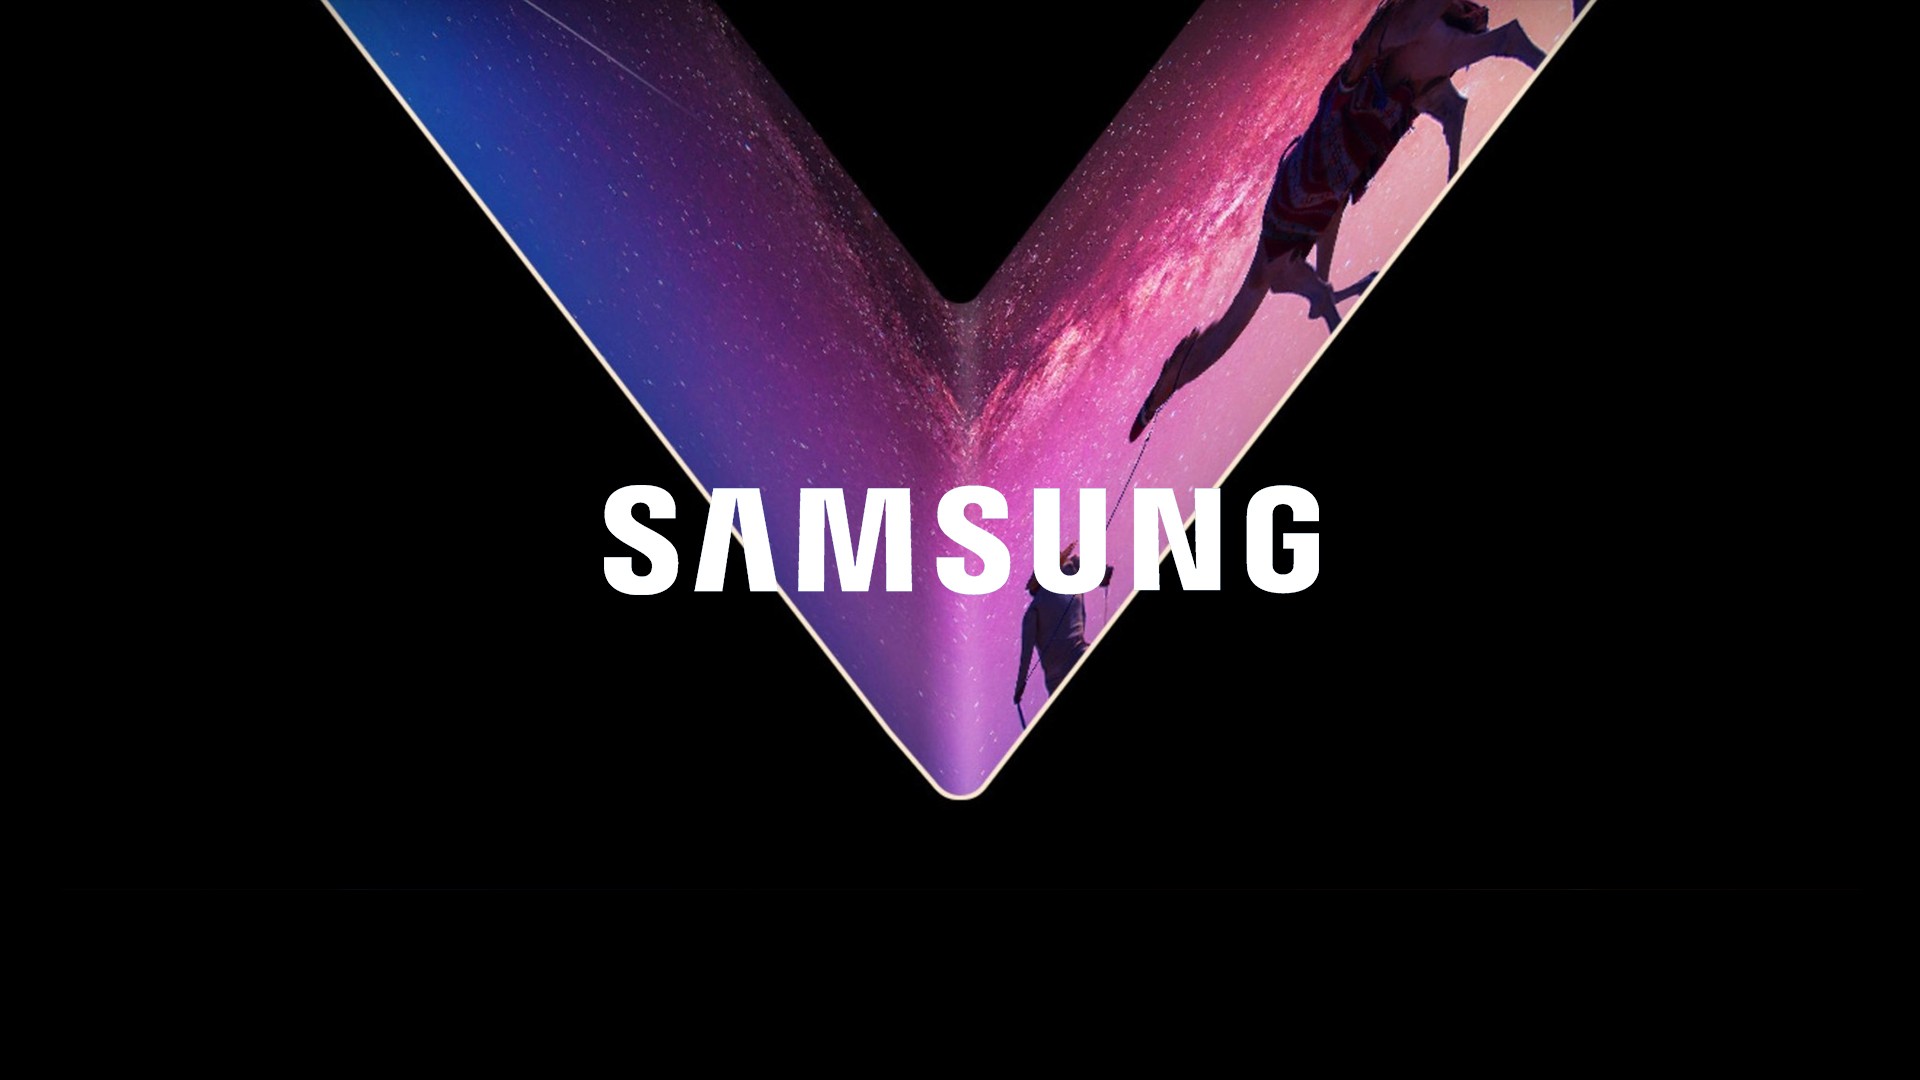 Sync-OLED: Samsung anuncia investimento para criar plataforma para estudos de painis OLED